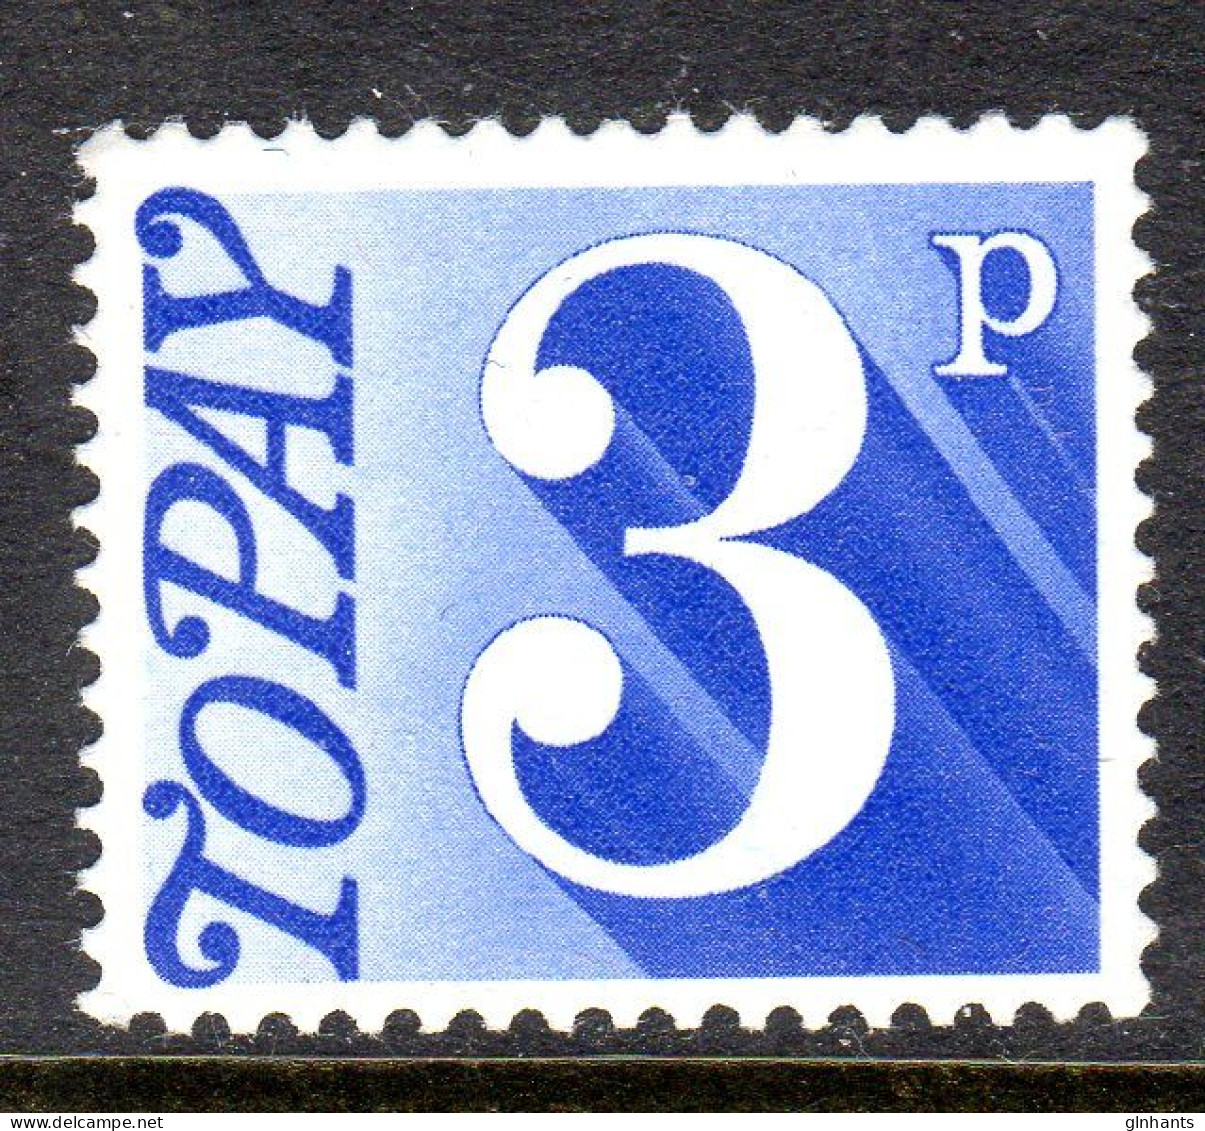 GREAT BRITAIN GB - 1970 POSTAGE DUE 3p STAMP FINE MNH ** SG D80 - Portomarken